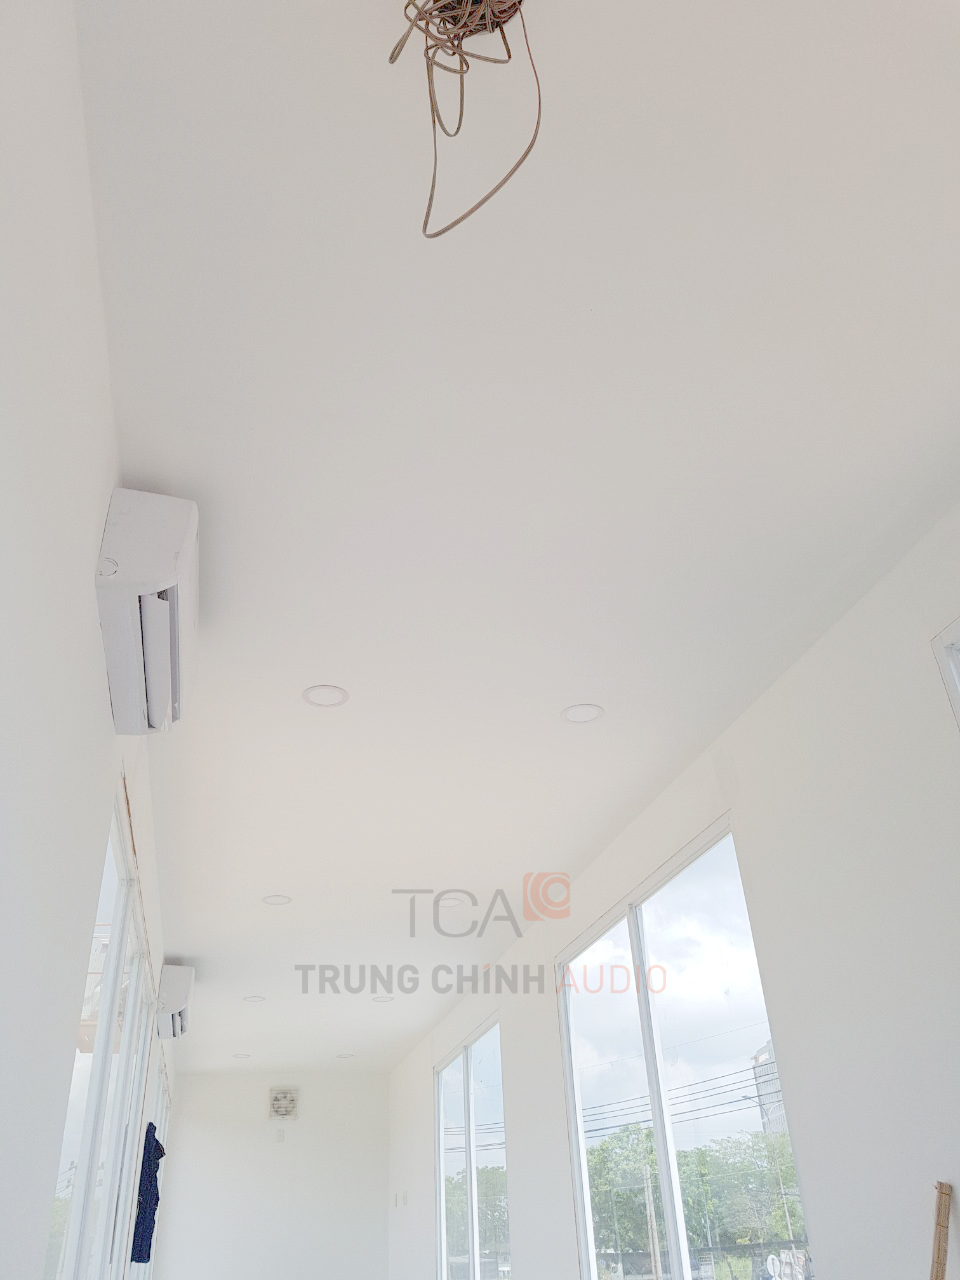 TCA thiết kế hệ thống Honeywell & TOA hoàn hảo cho Hoa Đồng Garden